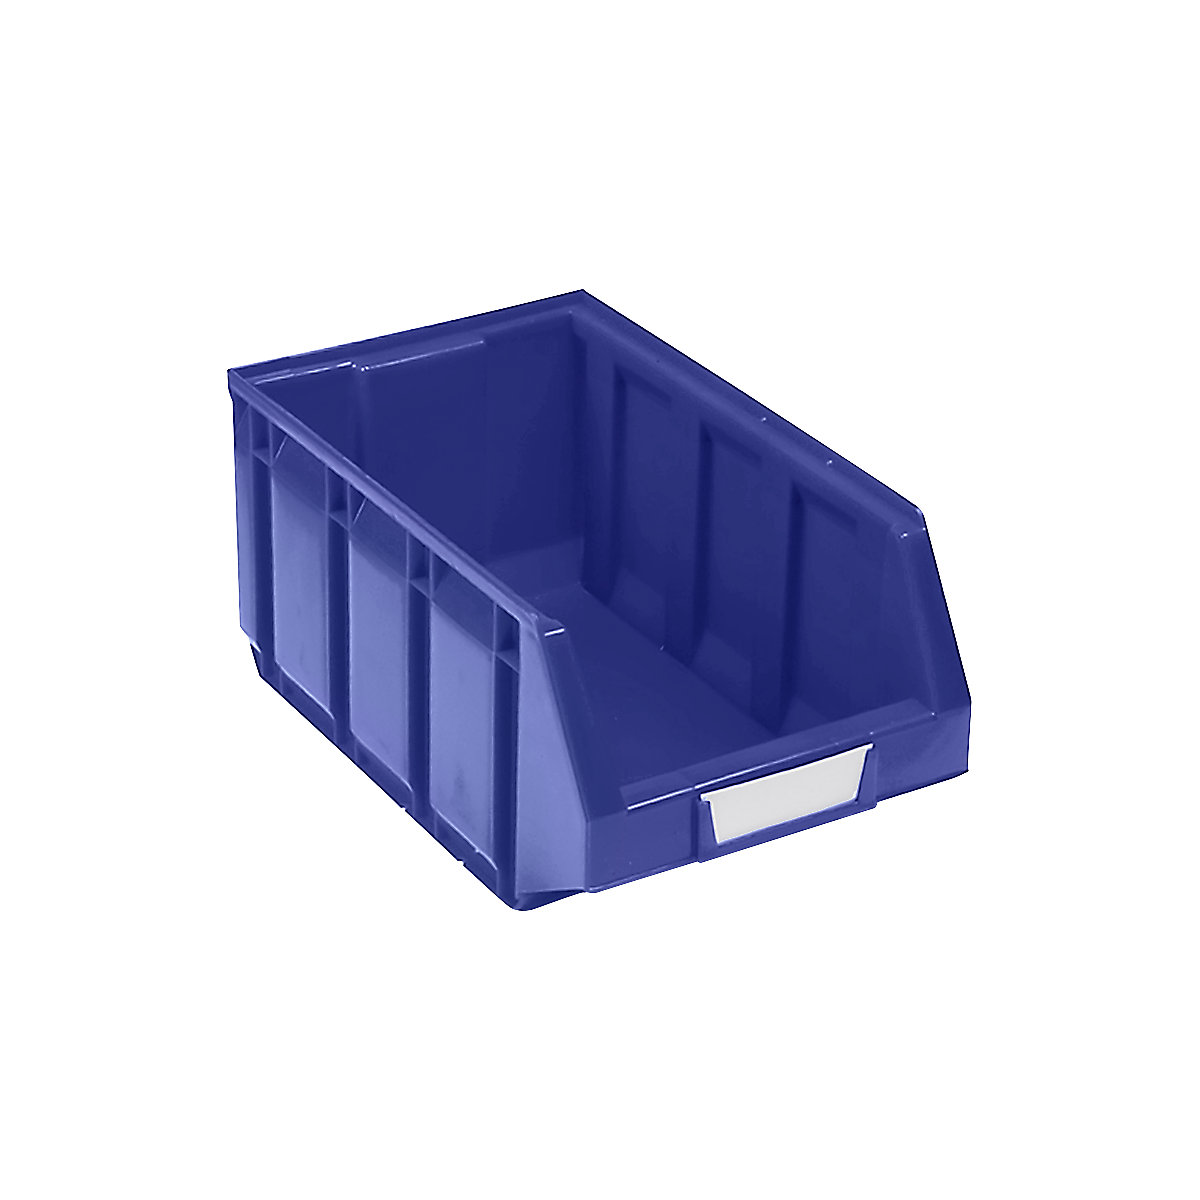 Odprta skladiščna škatla iz polietilena, DxŠxV 345 x 205 x 164 mm, modra, DE 24 kosov-11